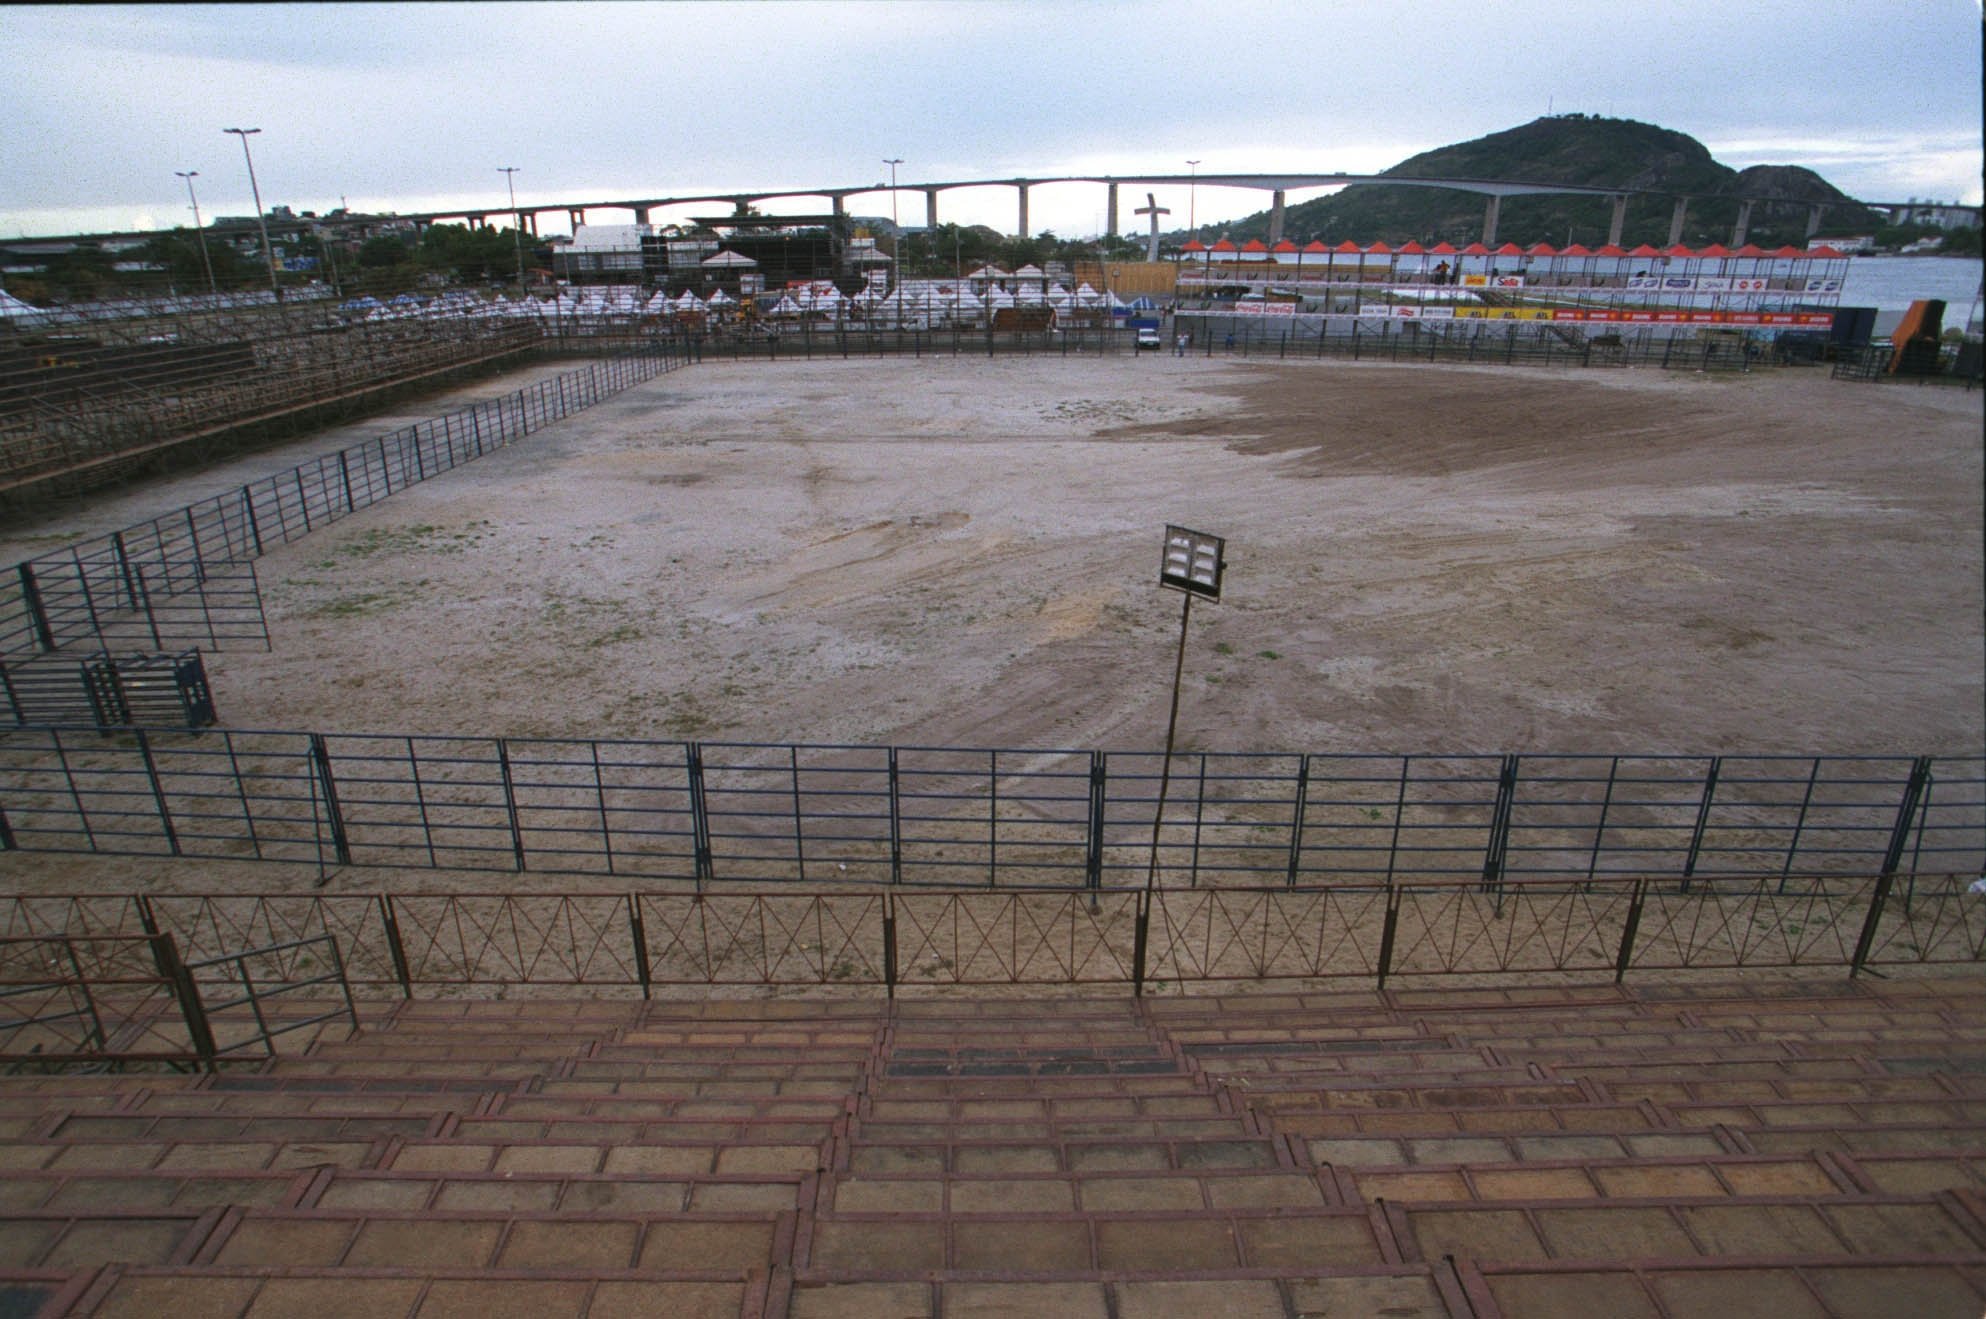 Montagem da arena para disputa do Rodeio Champion, Praça do Papa, Praia do Suá, Vitória. Data: 23/07/2003 Foto: Chico Guedes Neg.: 60.998